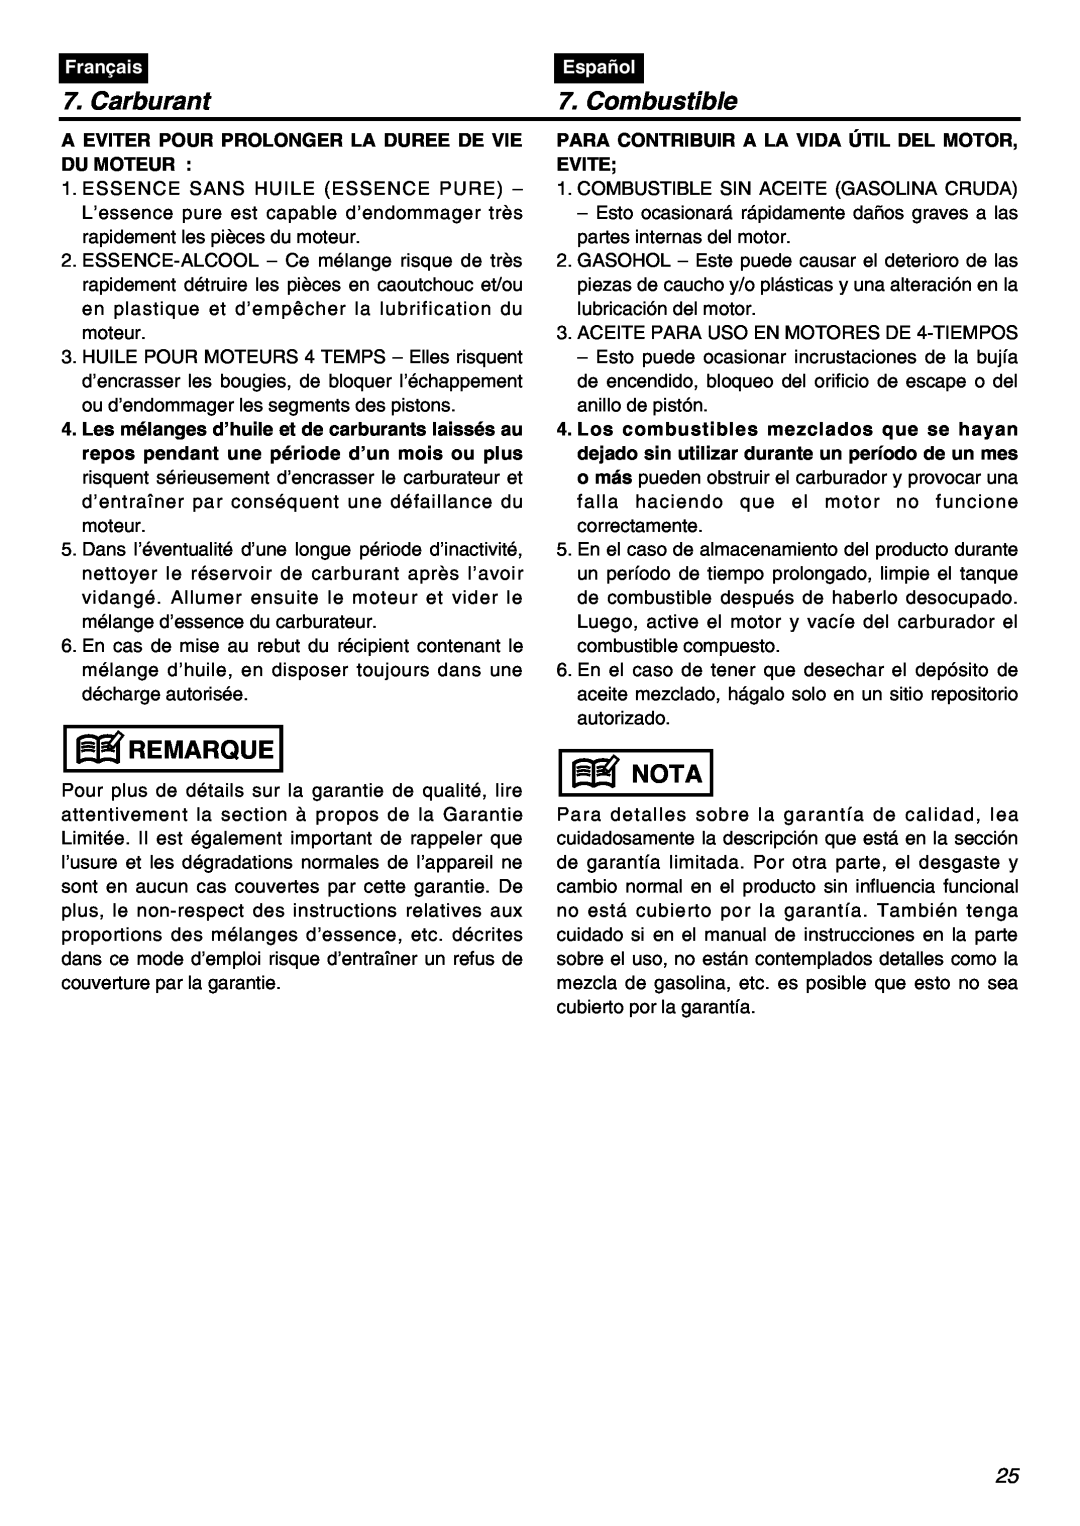 Zenoah HBZ2601-CA manual Carburant, Combustible, Remarque, Nota, Français, Español 